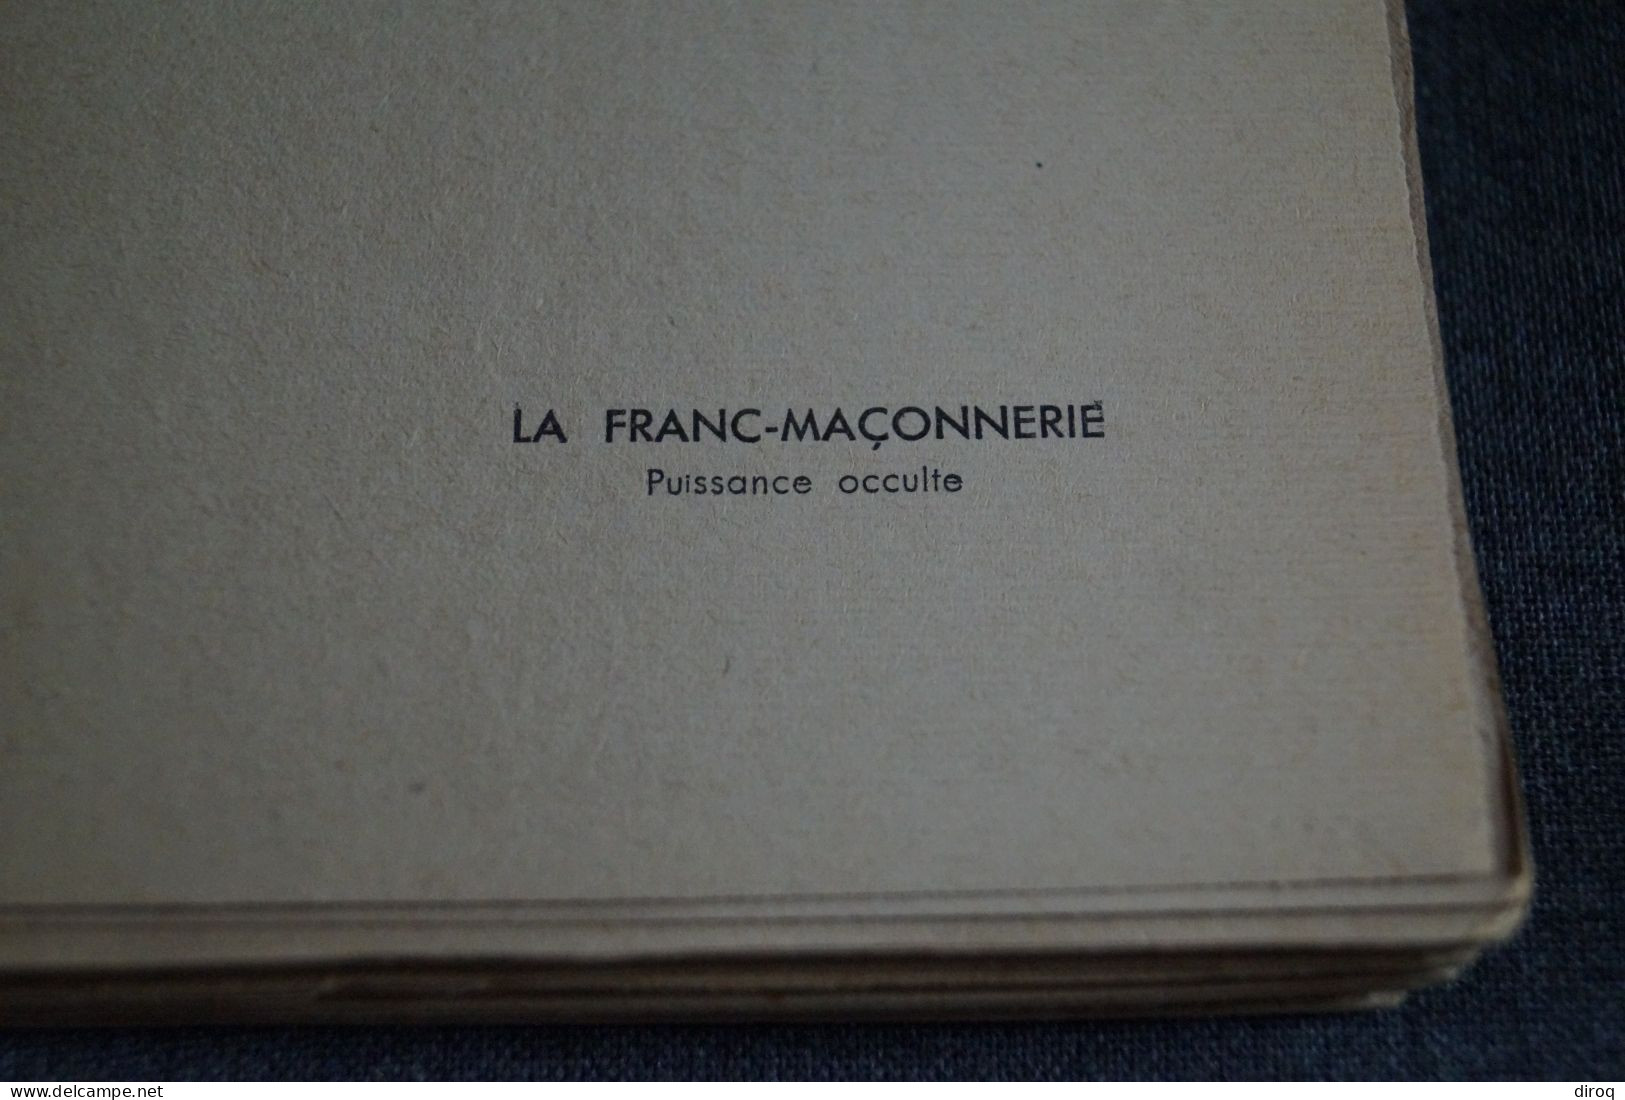 RARE Ouvrage De Franc-Maçonnerie 1932,Léon Poncin,Puissance Occulte,130 Pages,19 Cm./12 Cm. - Religion & Esotericism